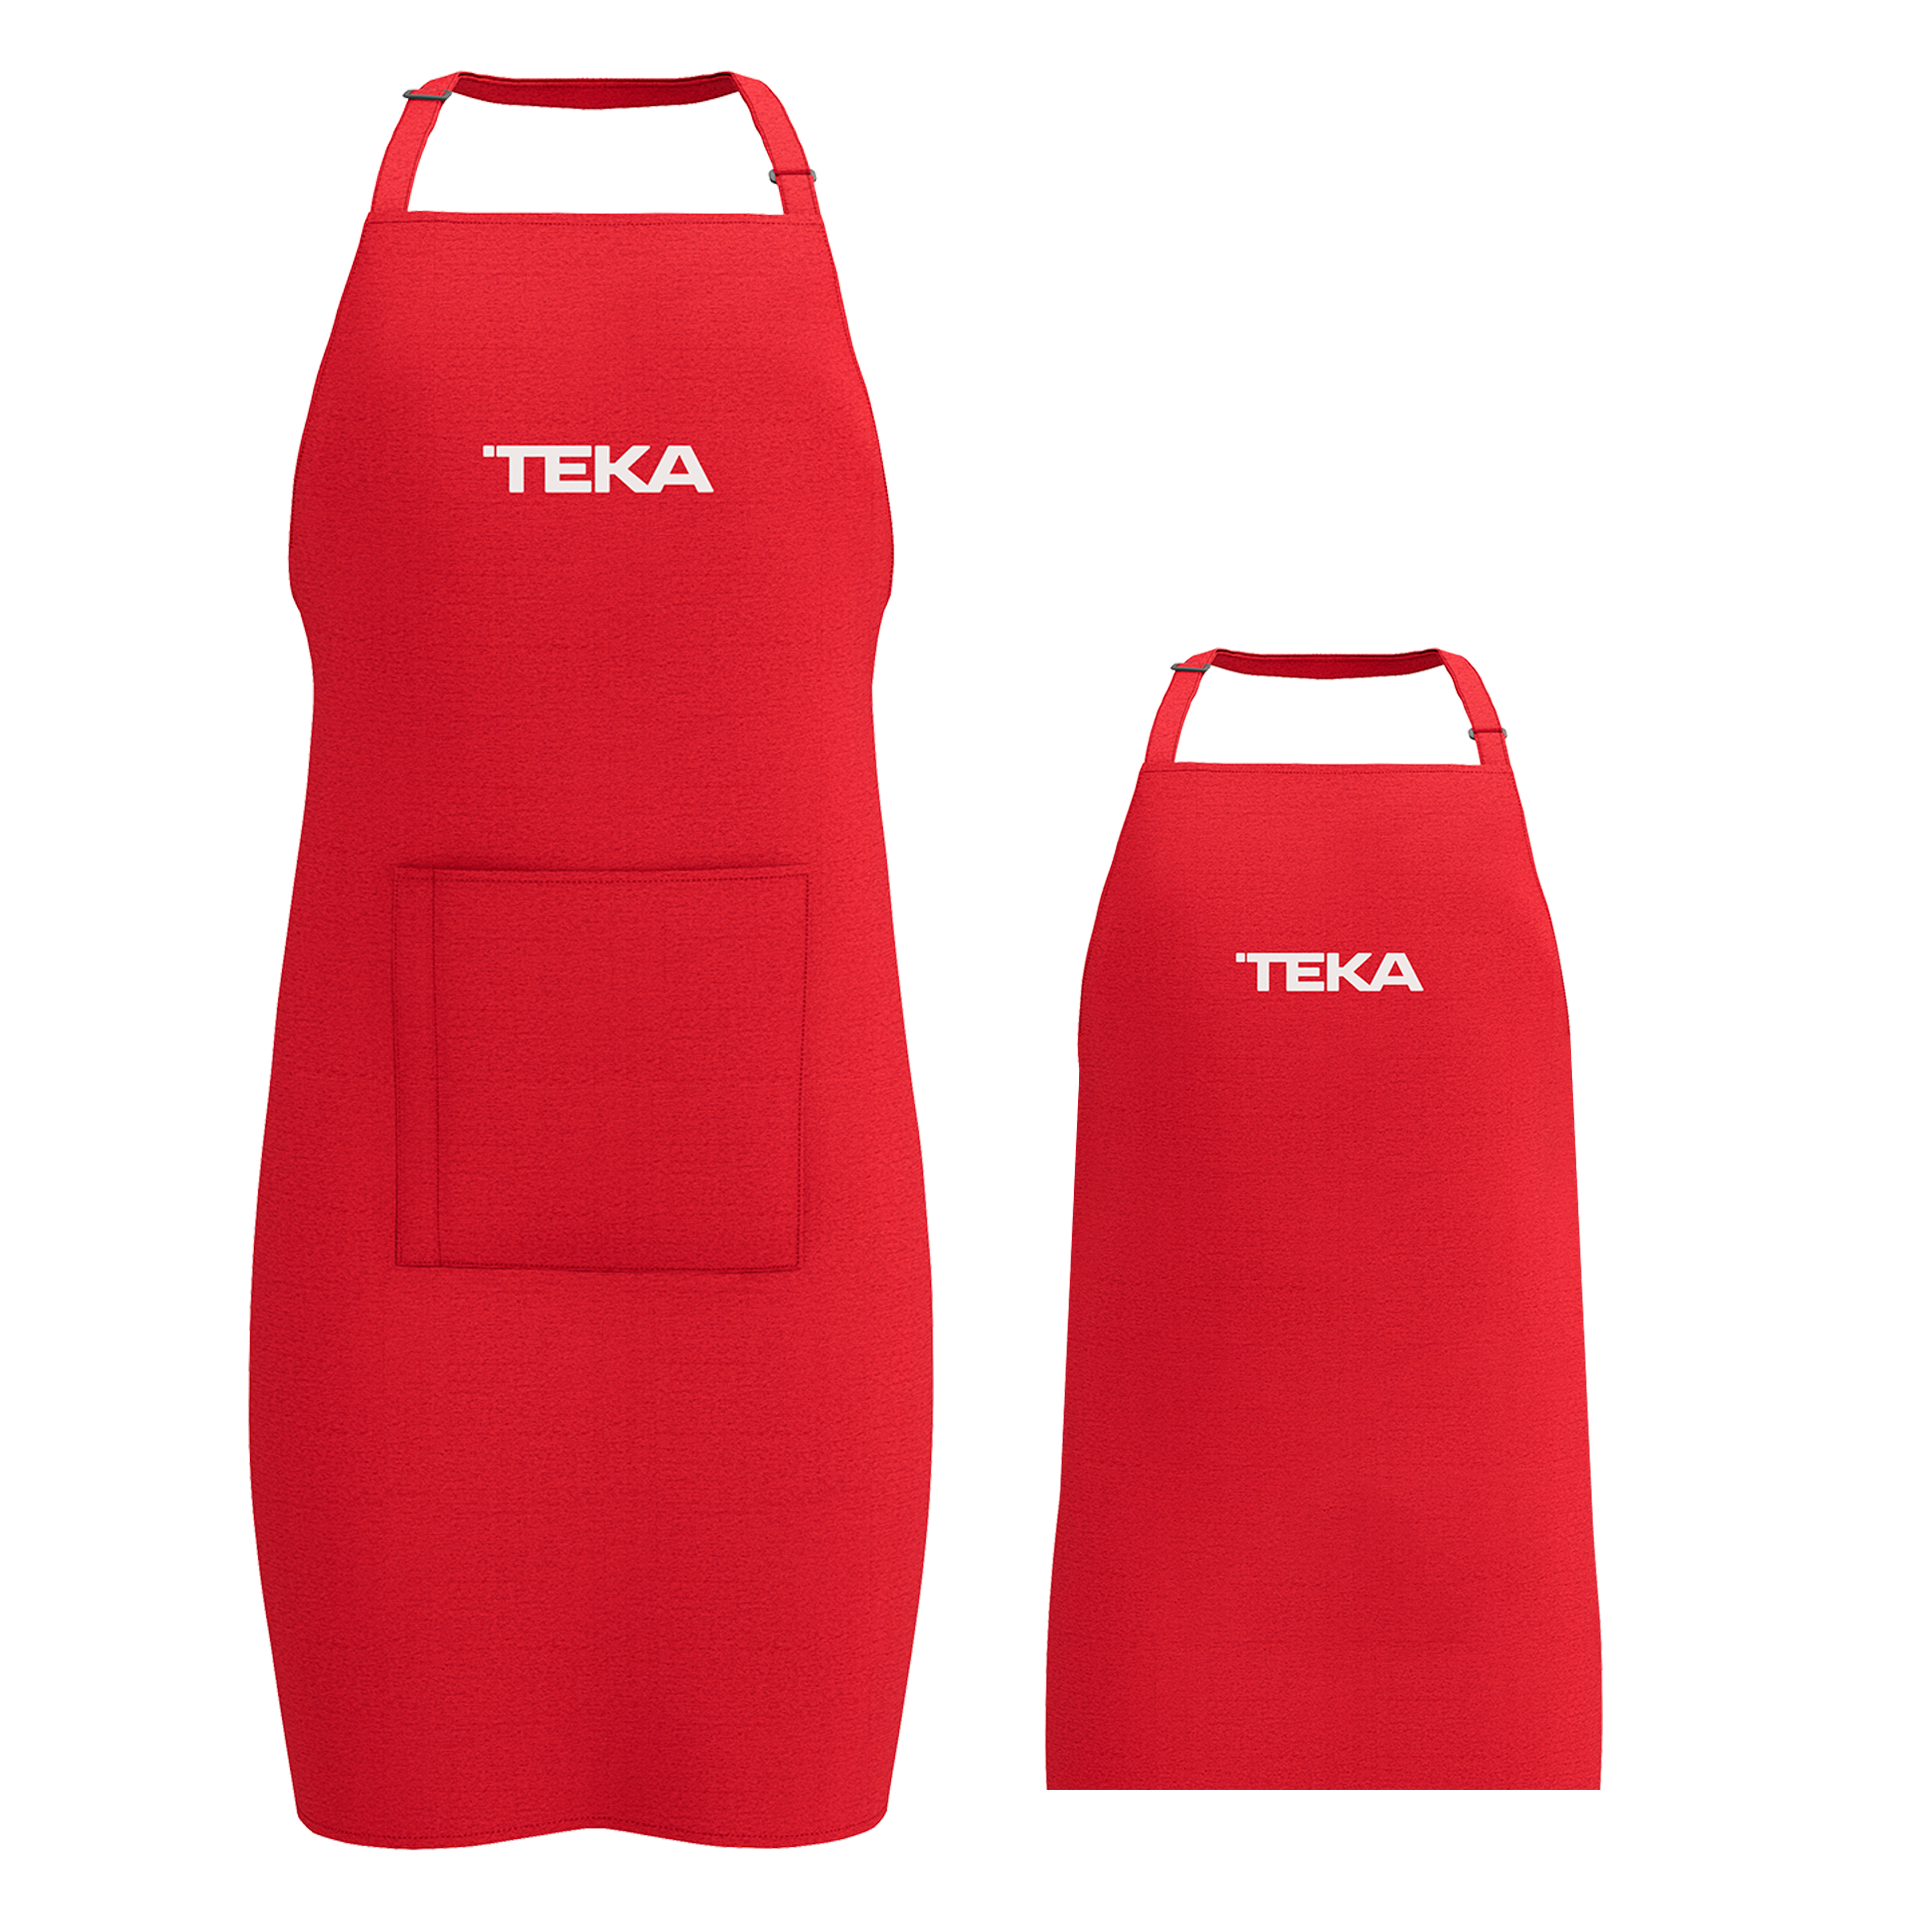 Pack delantales de cocina con cuello ajustable de color rojo en dos tamaños: adulto + niño